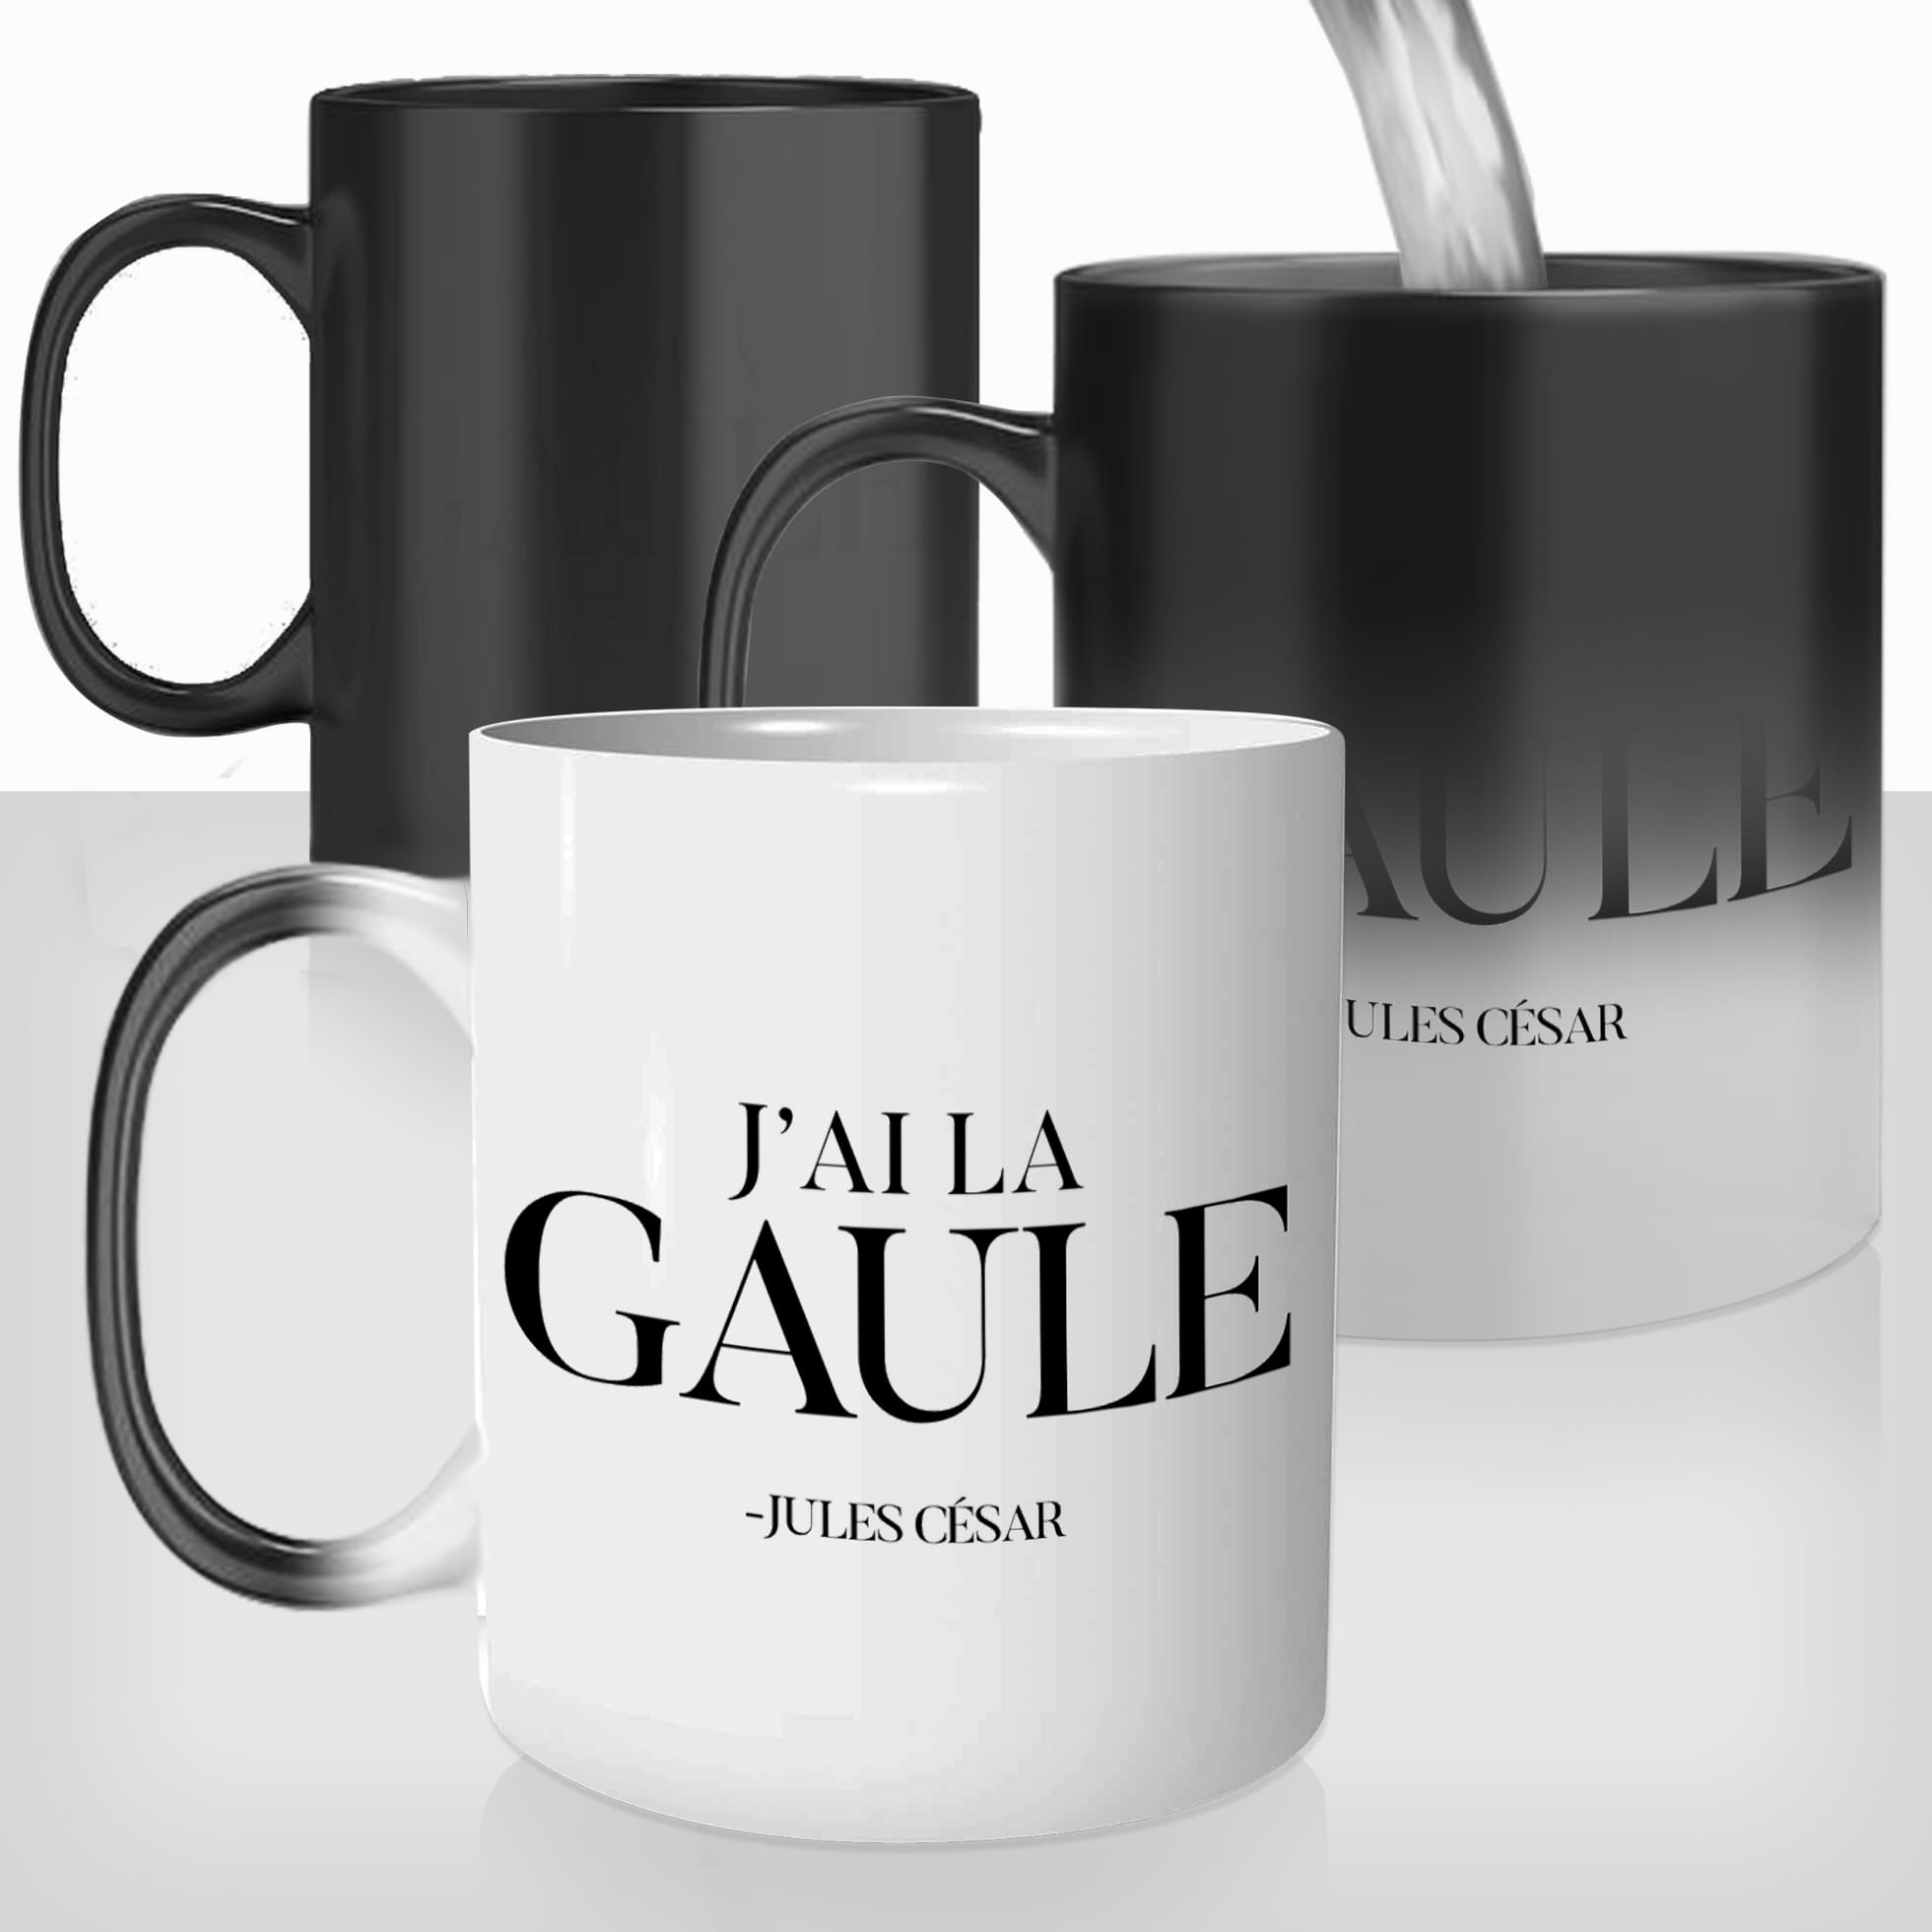 mug-magique-personnalisé-tasse-thermo-reactif-thermique-j'ai-la-gaule-jules-cesar-erection-france-francais-photo-personnalisable-cadeau-fun